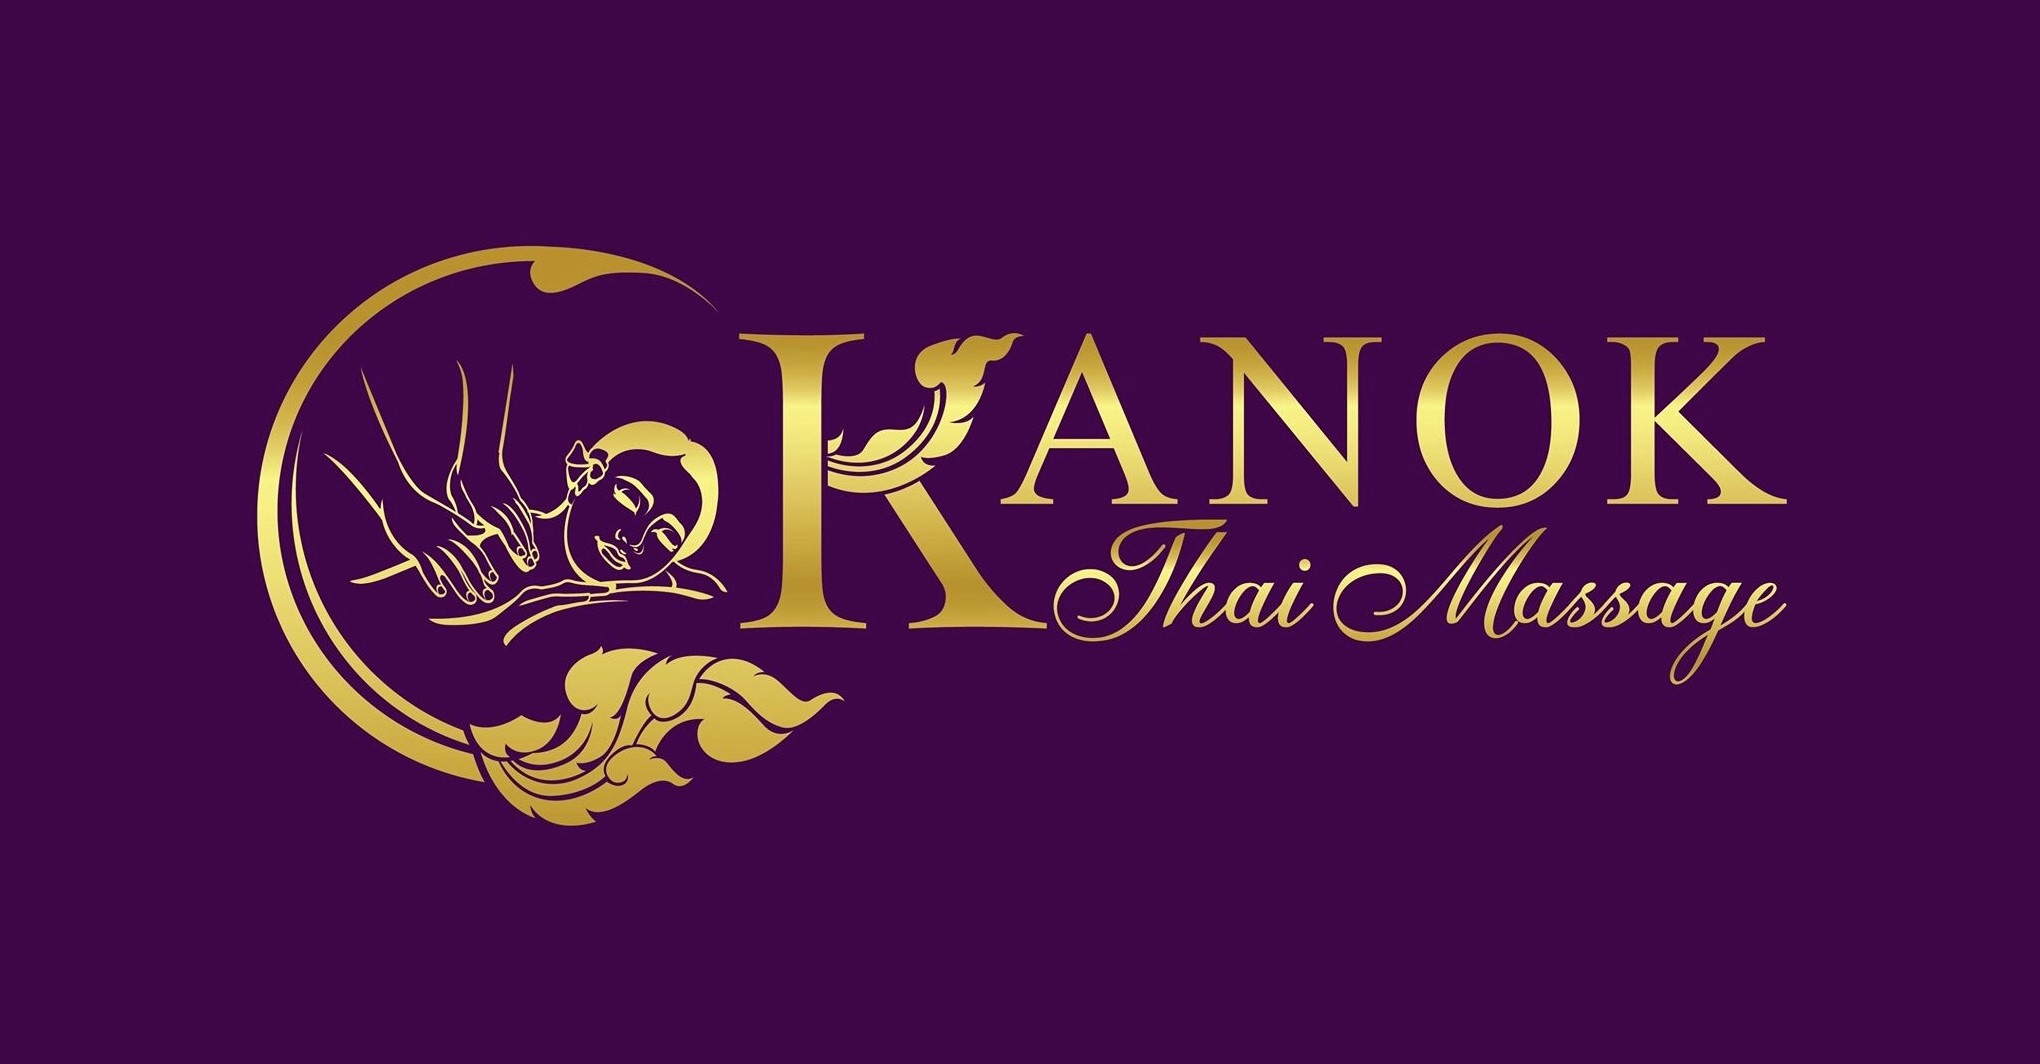 Kanok Thai Massage Therapist